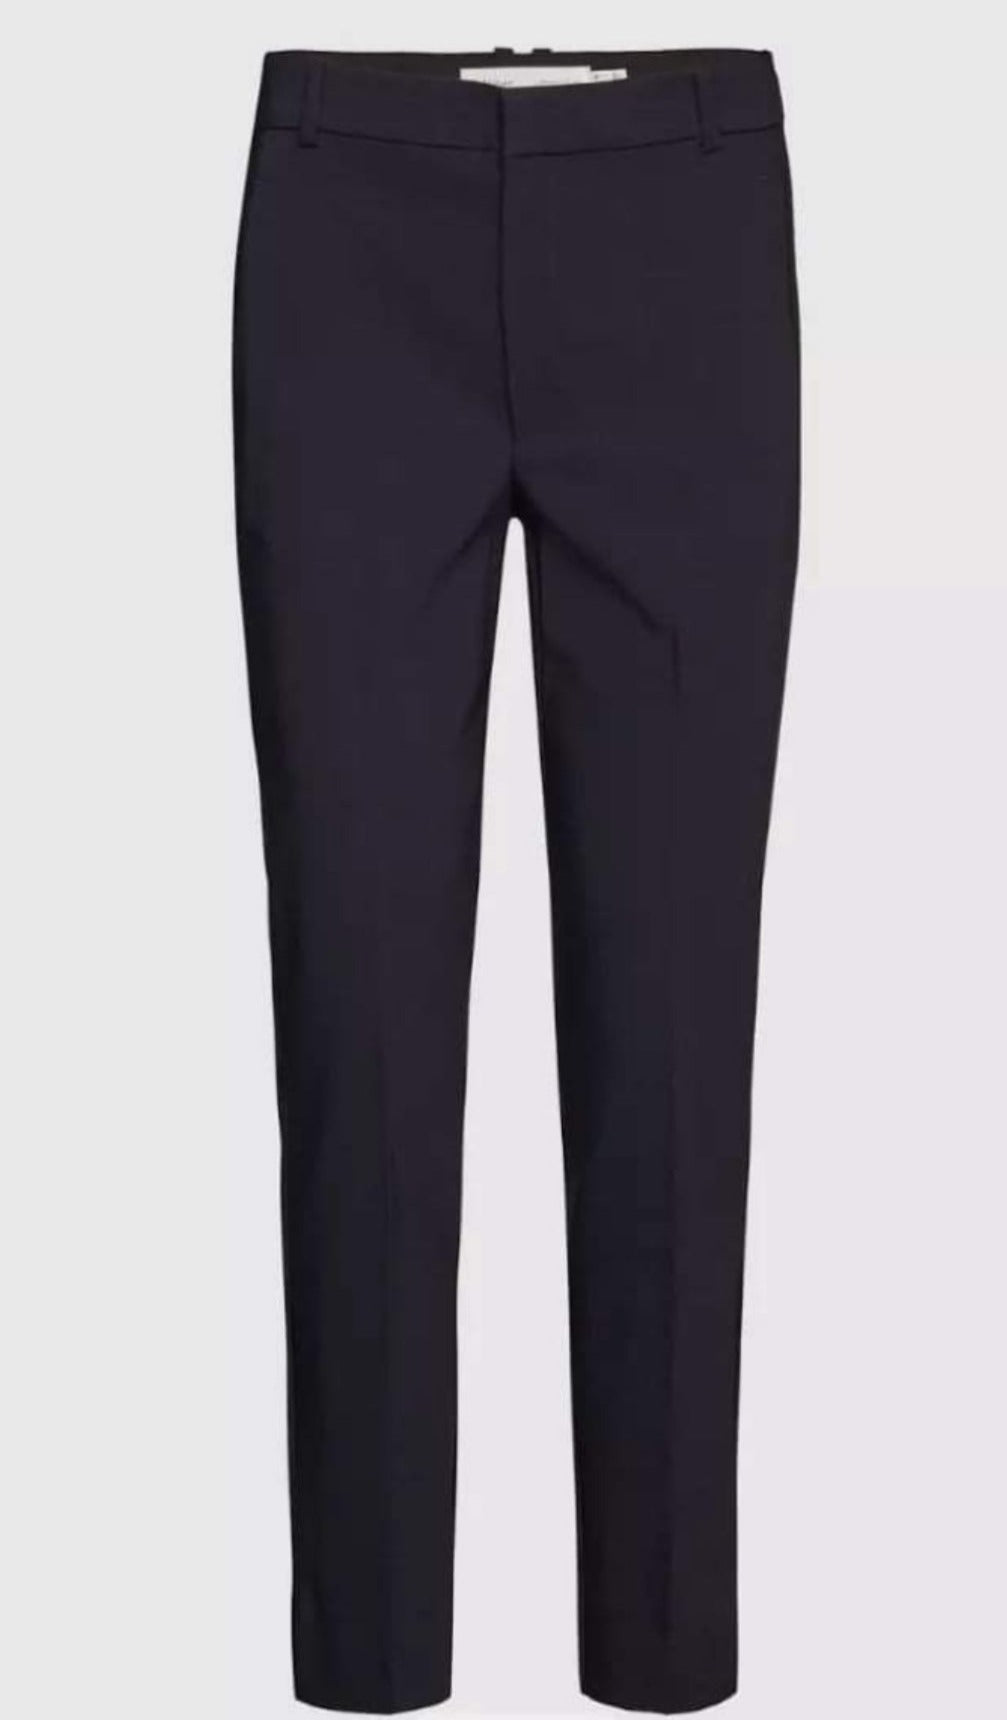 Inwear Trousers  - Zella Navy